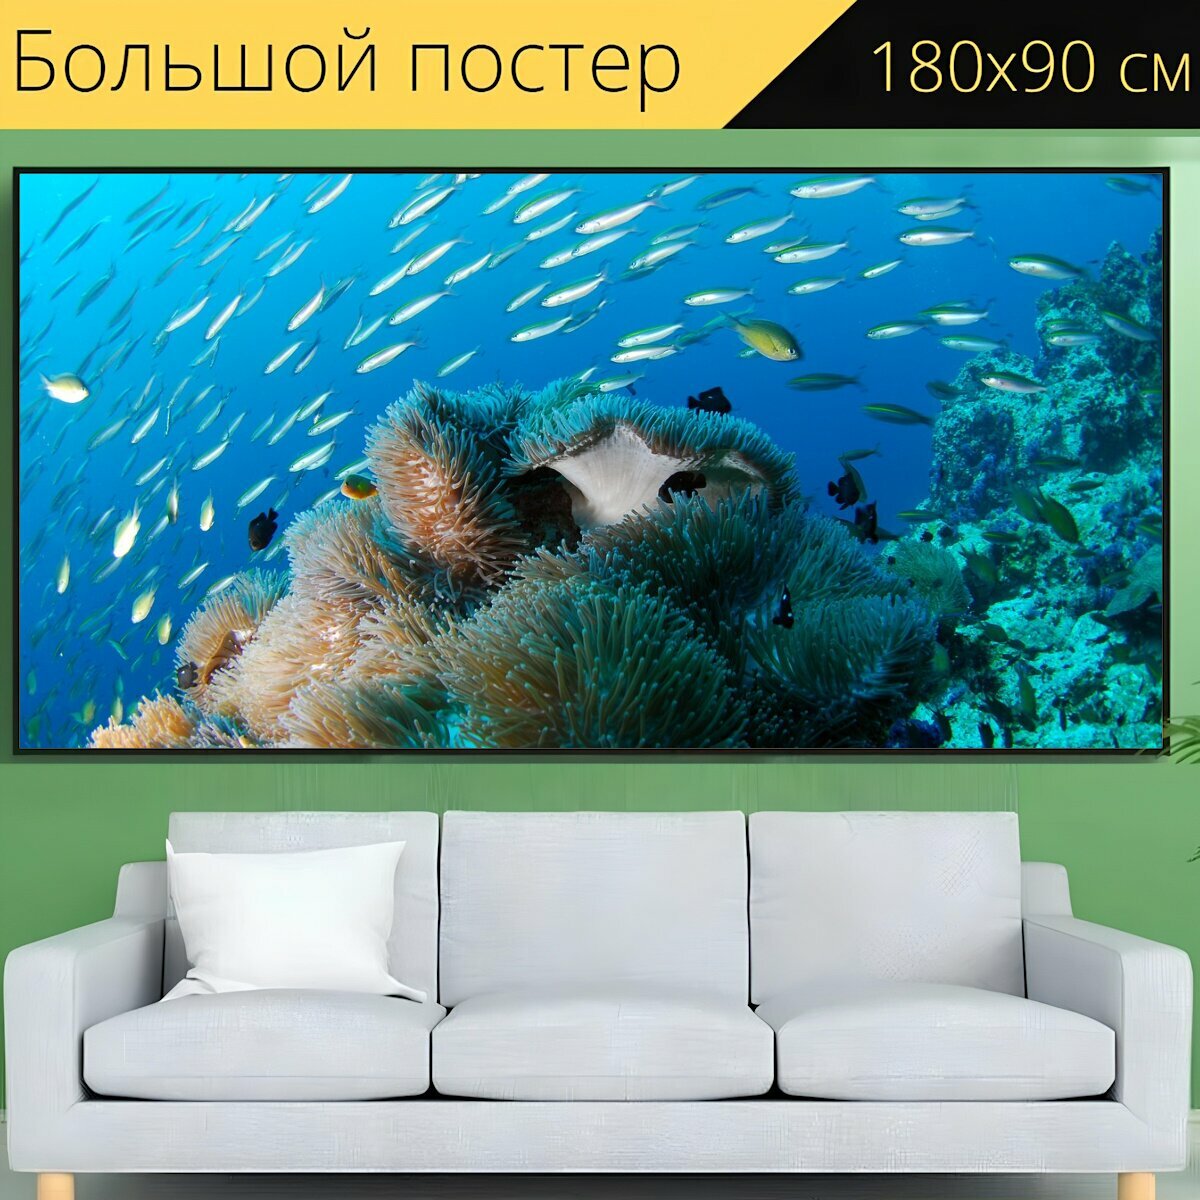 Большой постер "Дайвинг, подводный, океан" 180 x 90 см. для интерьера